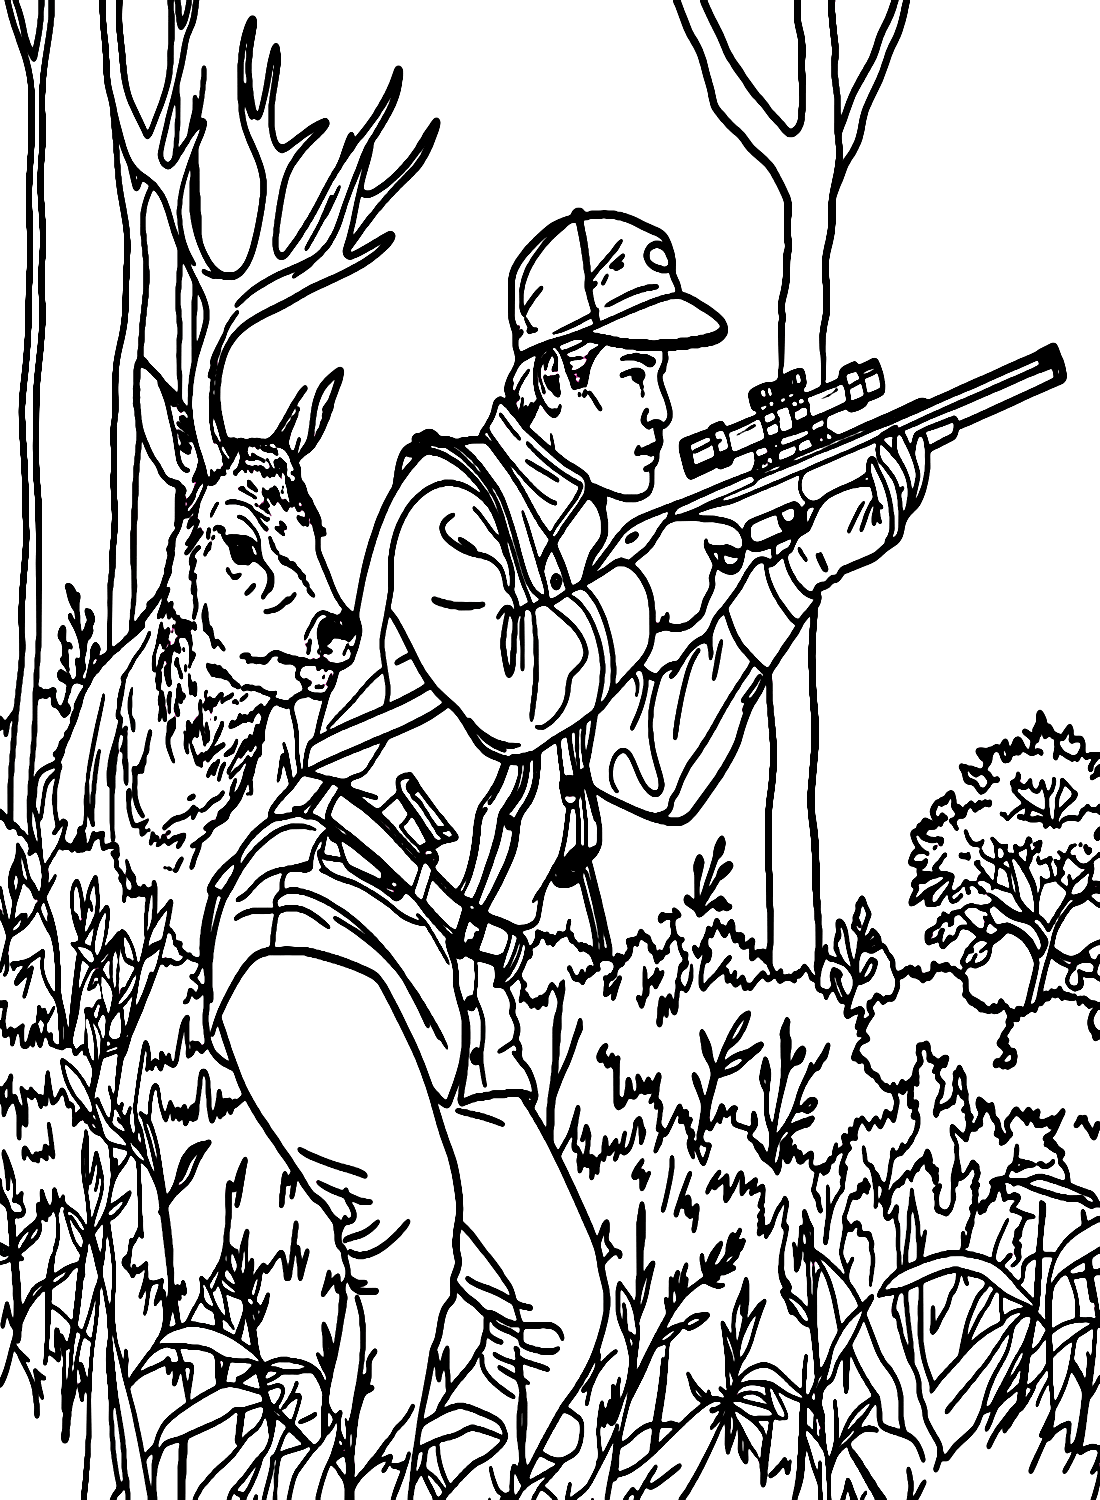 Mann hält Gewehr bei der Jagd auf Hirsche von der Jagd